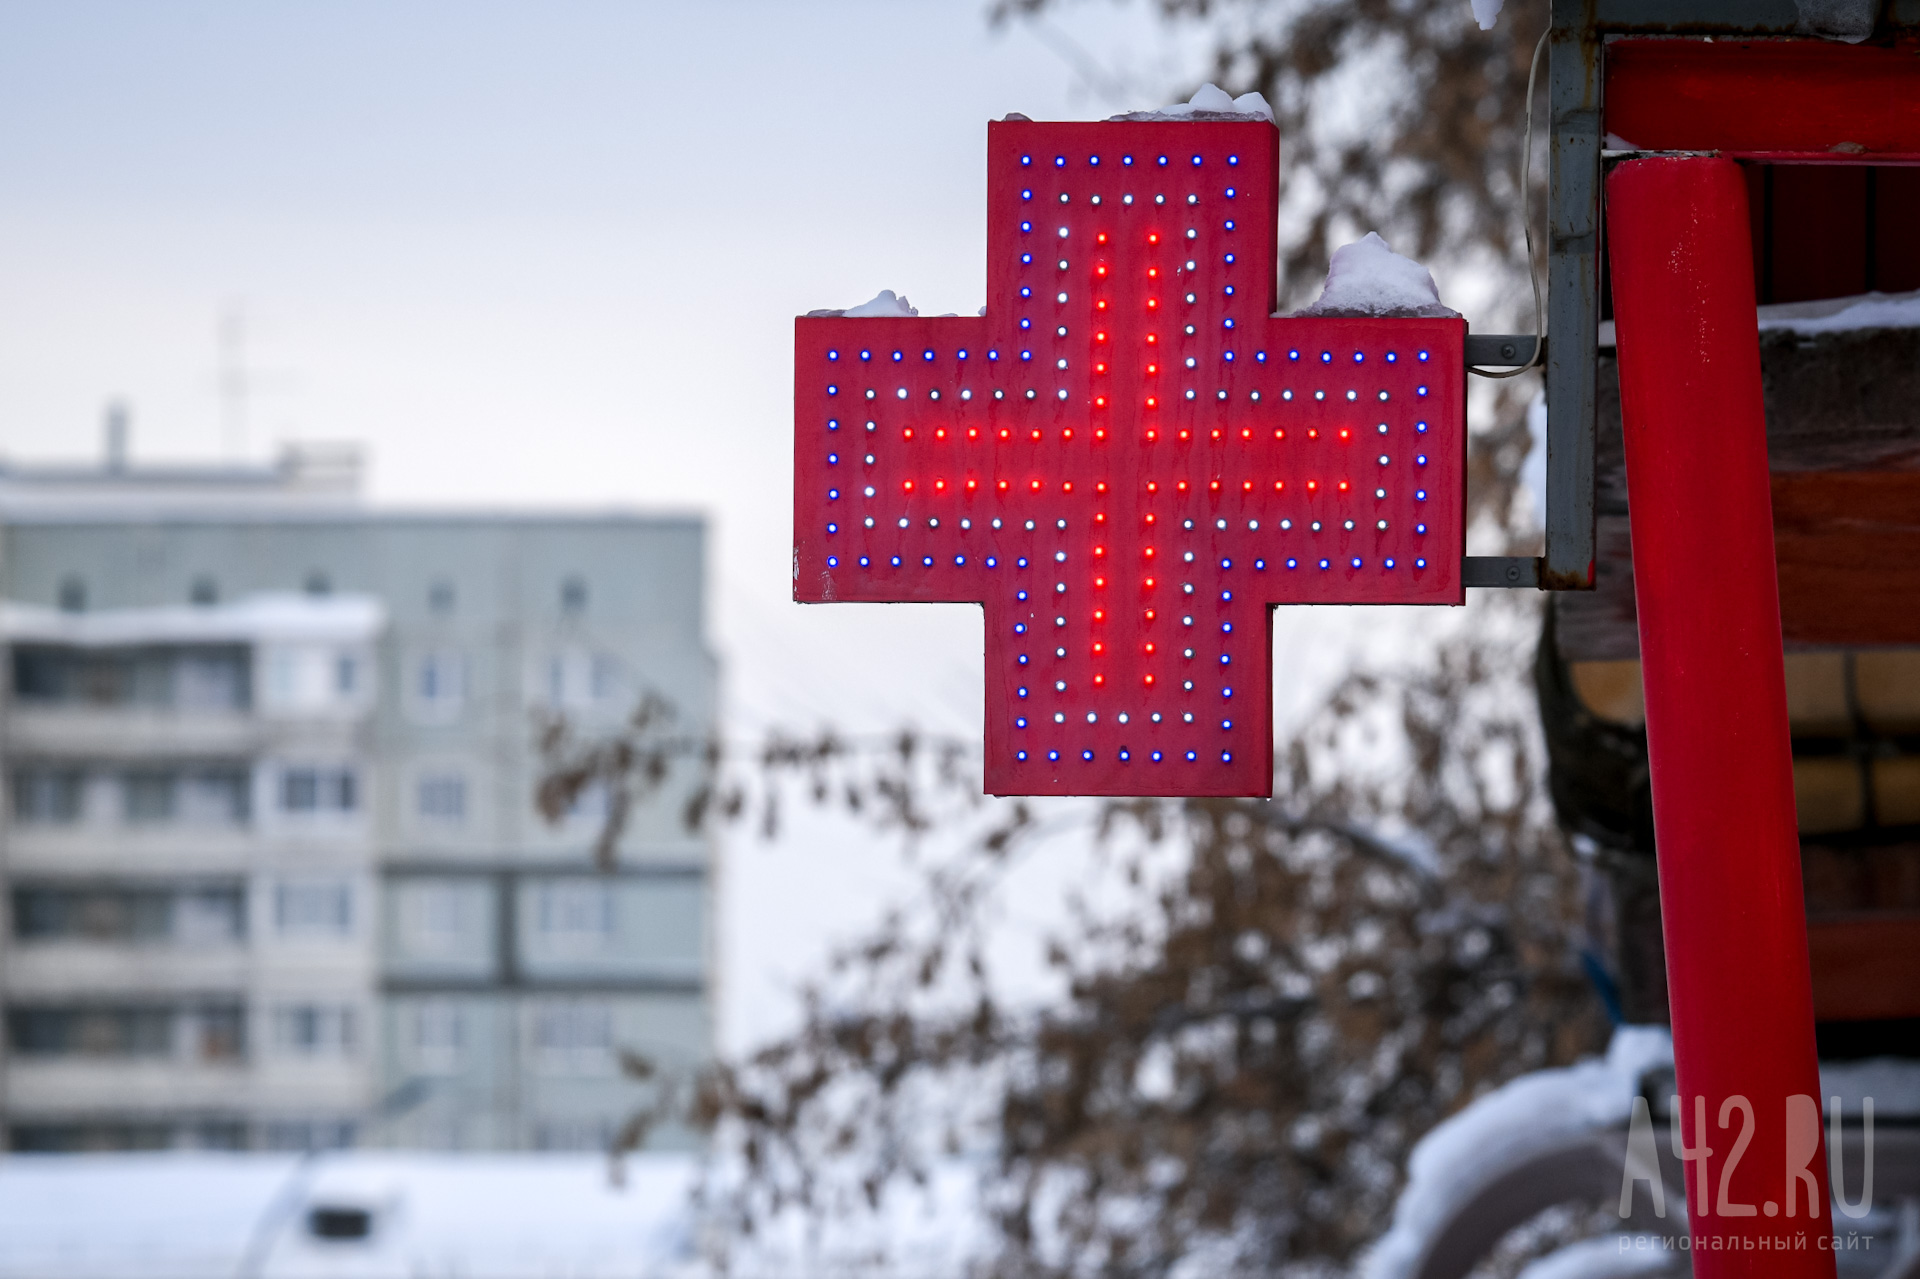 В Росздравнадзоре Кузбасса прокомментировали жалобы на отсутствие жизненно важных лекарств в аптеках